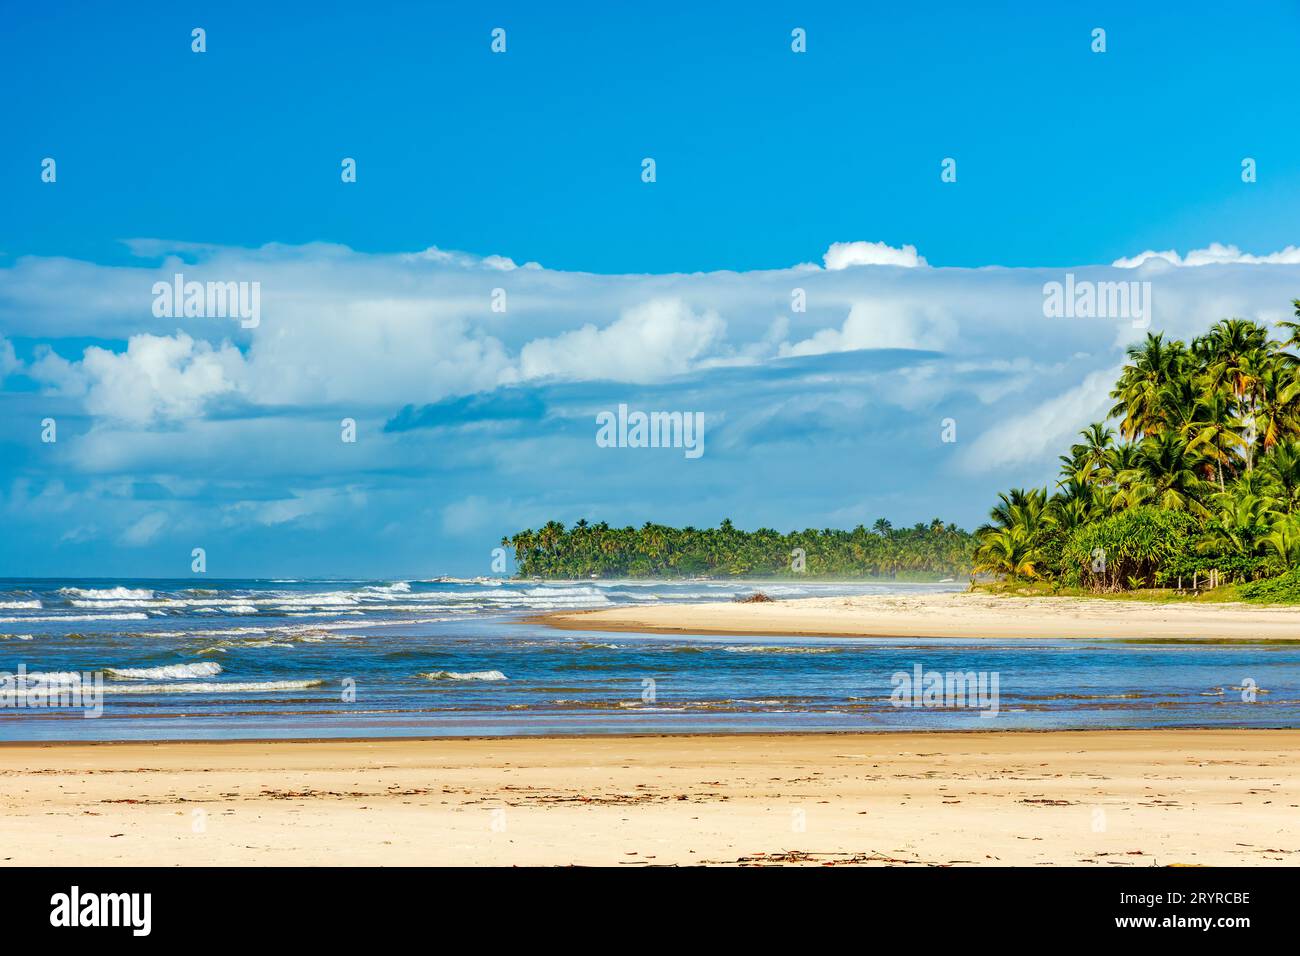 Spiaggia di Sargi circondata da palme da cocco e vegetazione autoctona Foto Stock